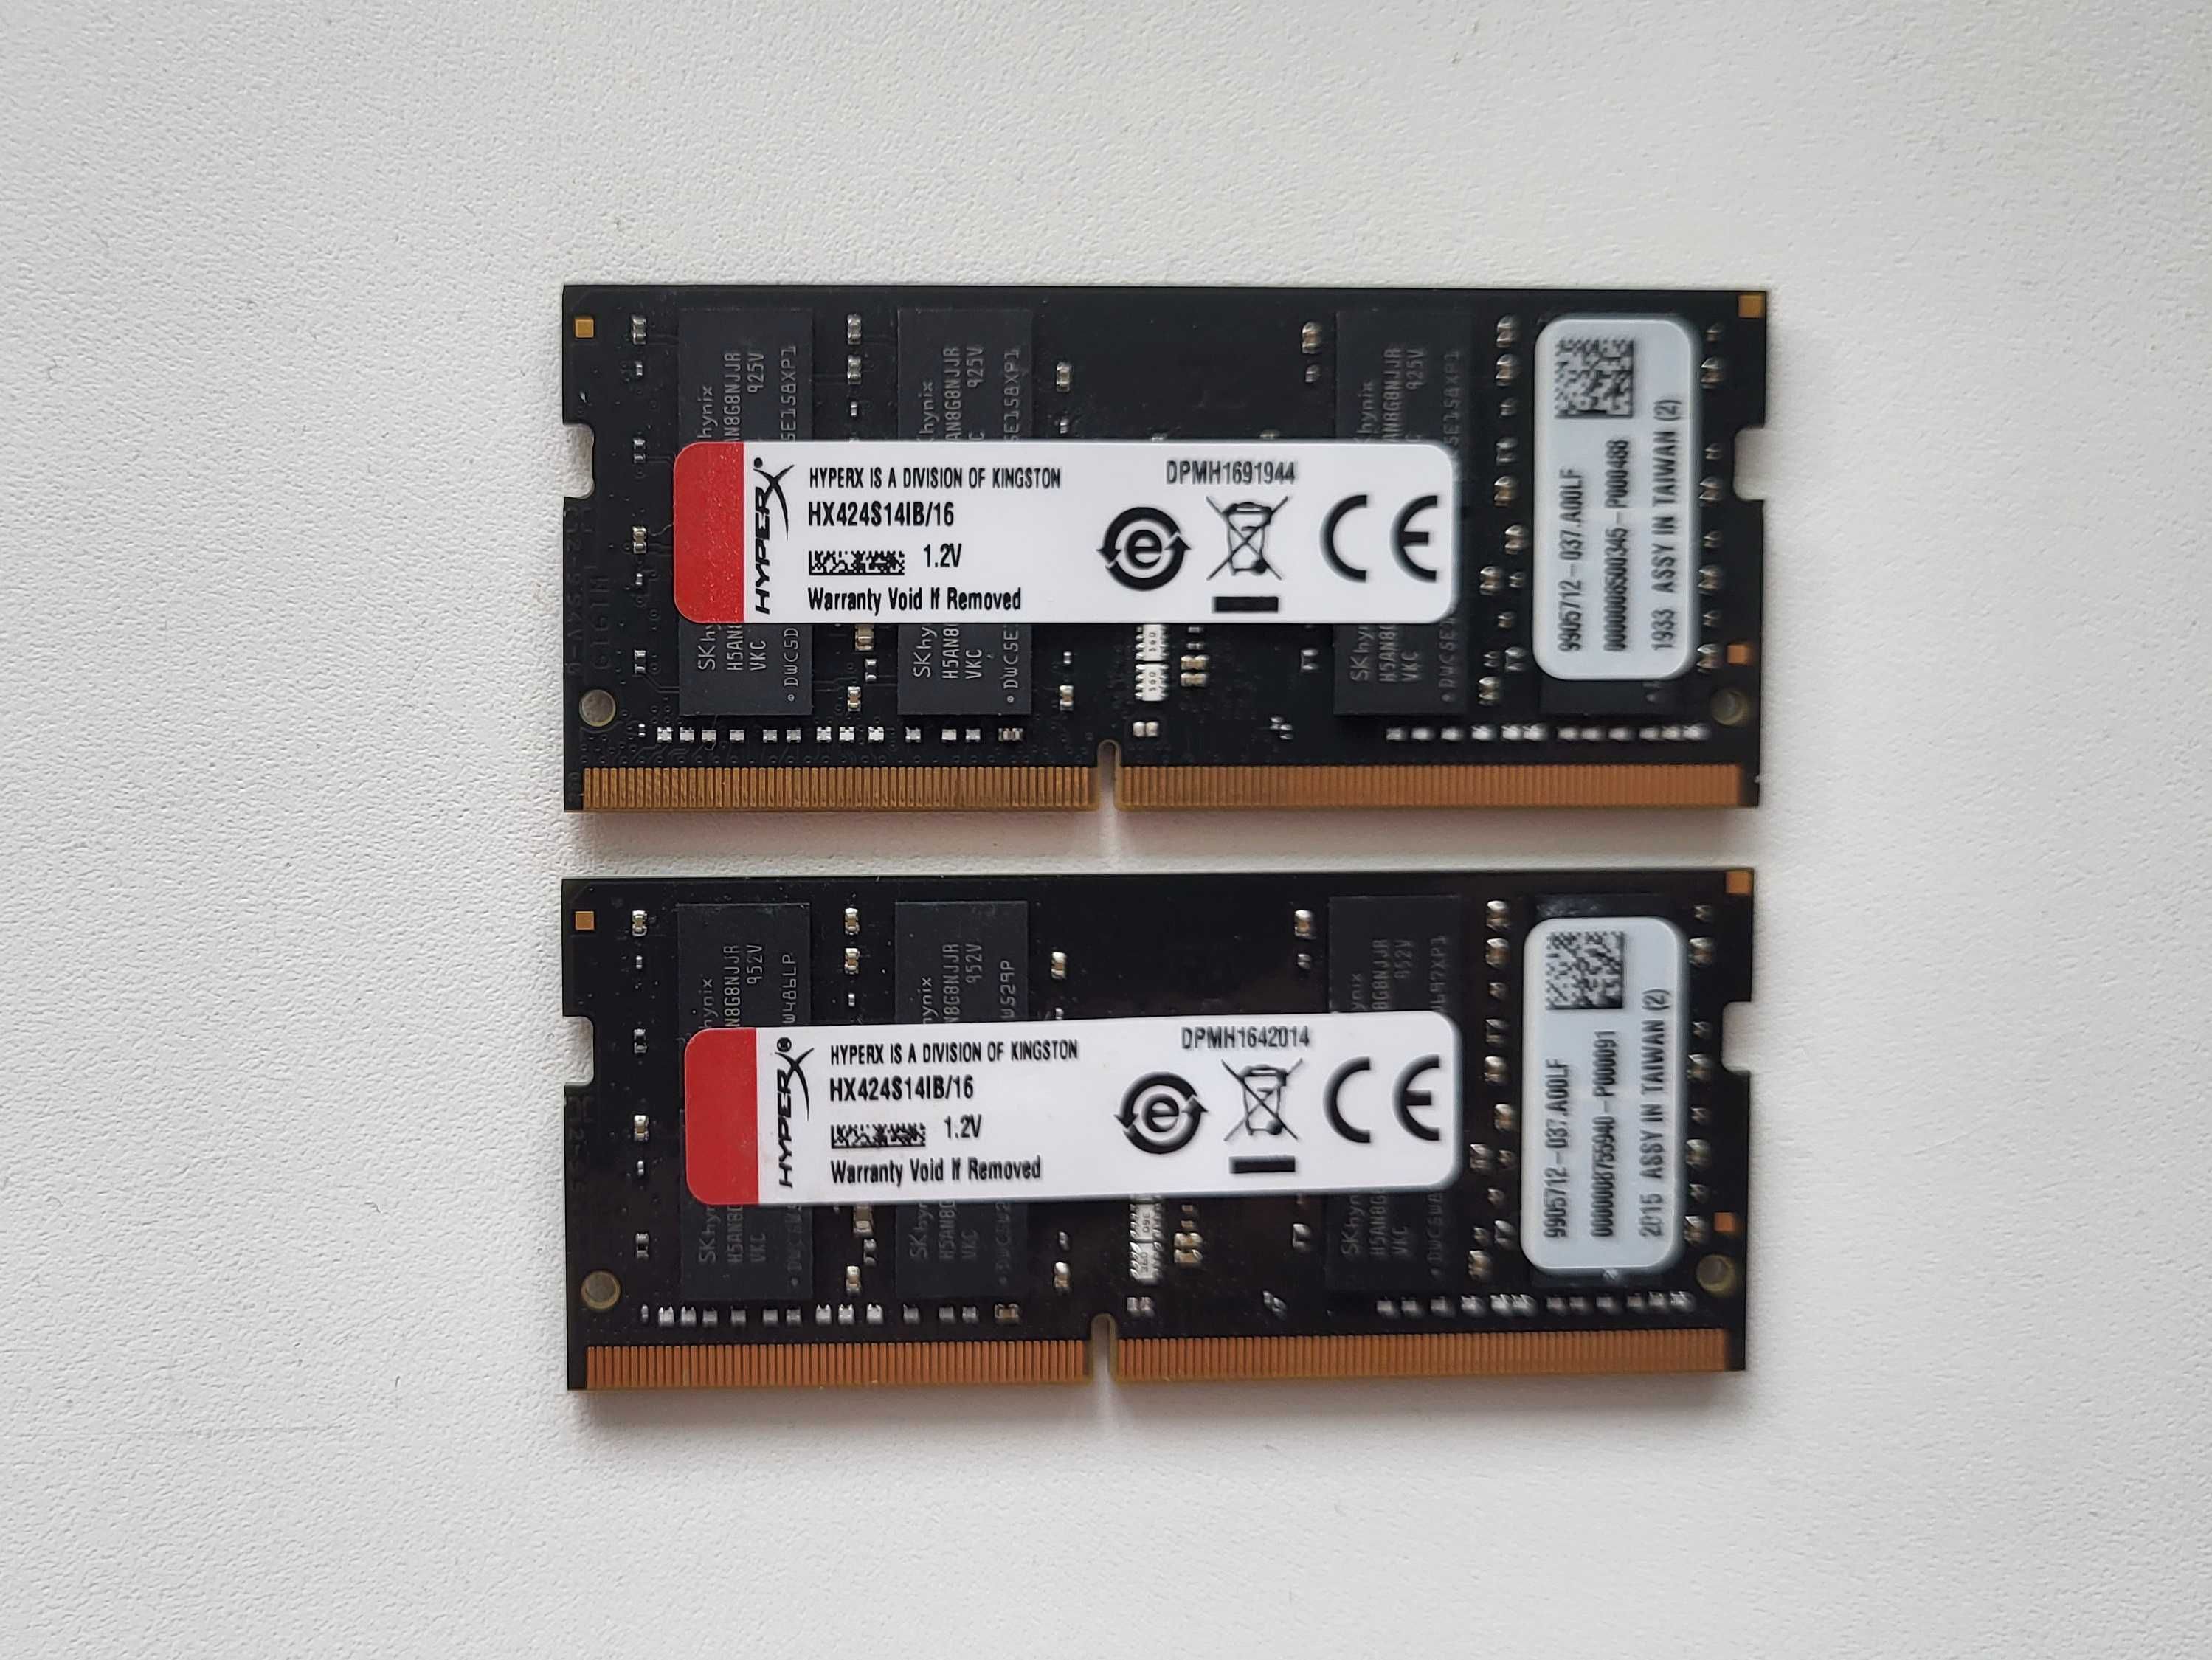 HyperX SODIMM DDR4-2400 16GB 16384MB PC4-19200 Impact (HX424S14IB/16)